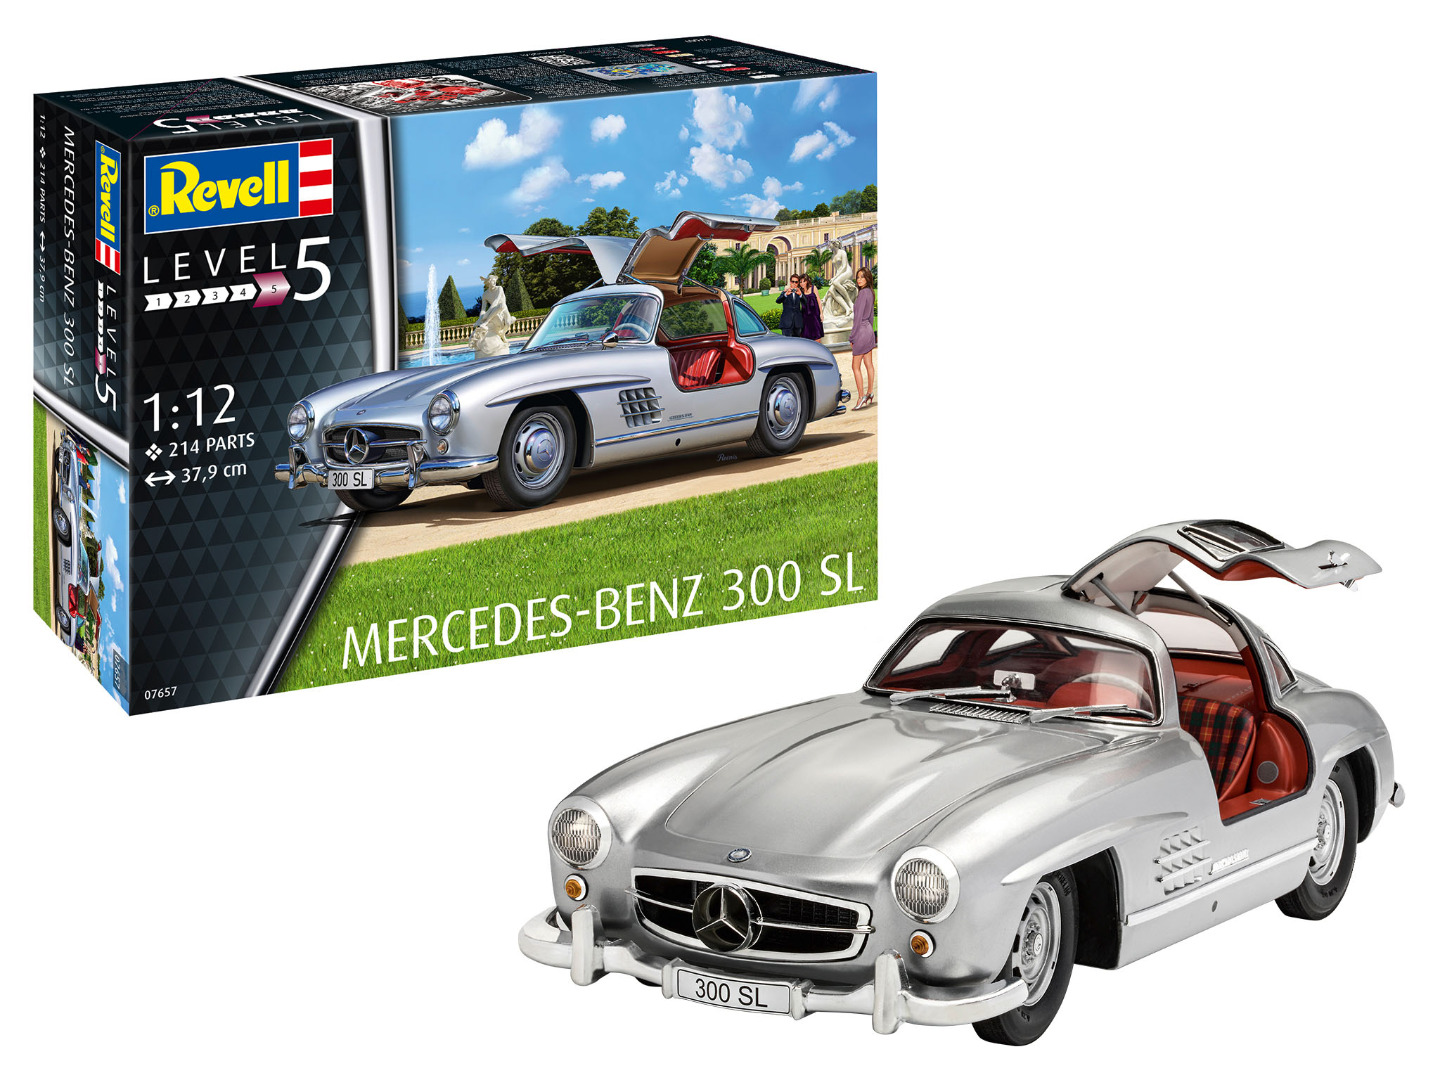 Revell Model Kit Mercedes Benz 300 SL Scale 1:12